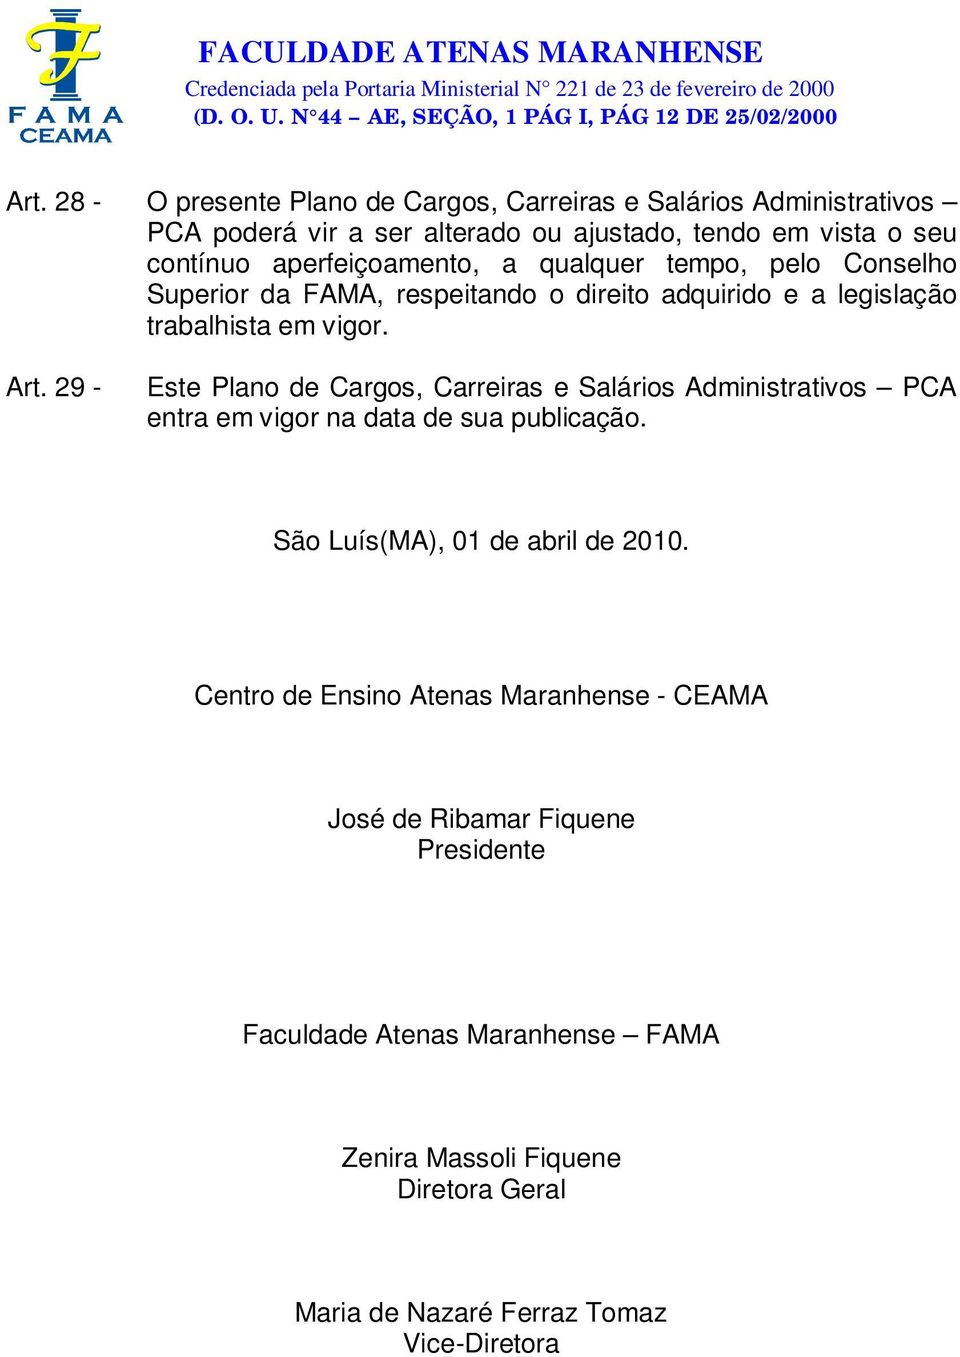 29 - Este Plano de Cargos, Carreiras e Salários Administrativos PCA entra em vigor na data de sua publicação. São Luís(MA), 01 de abril de 2010.